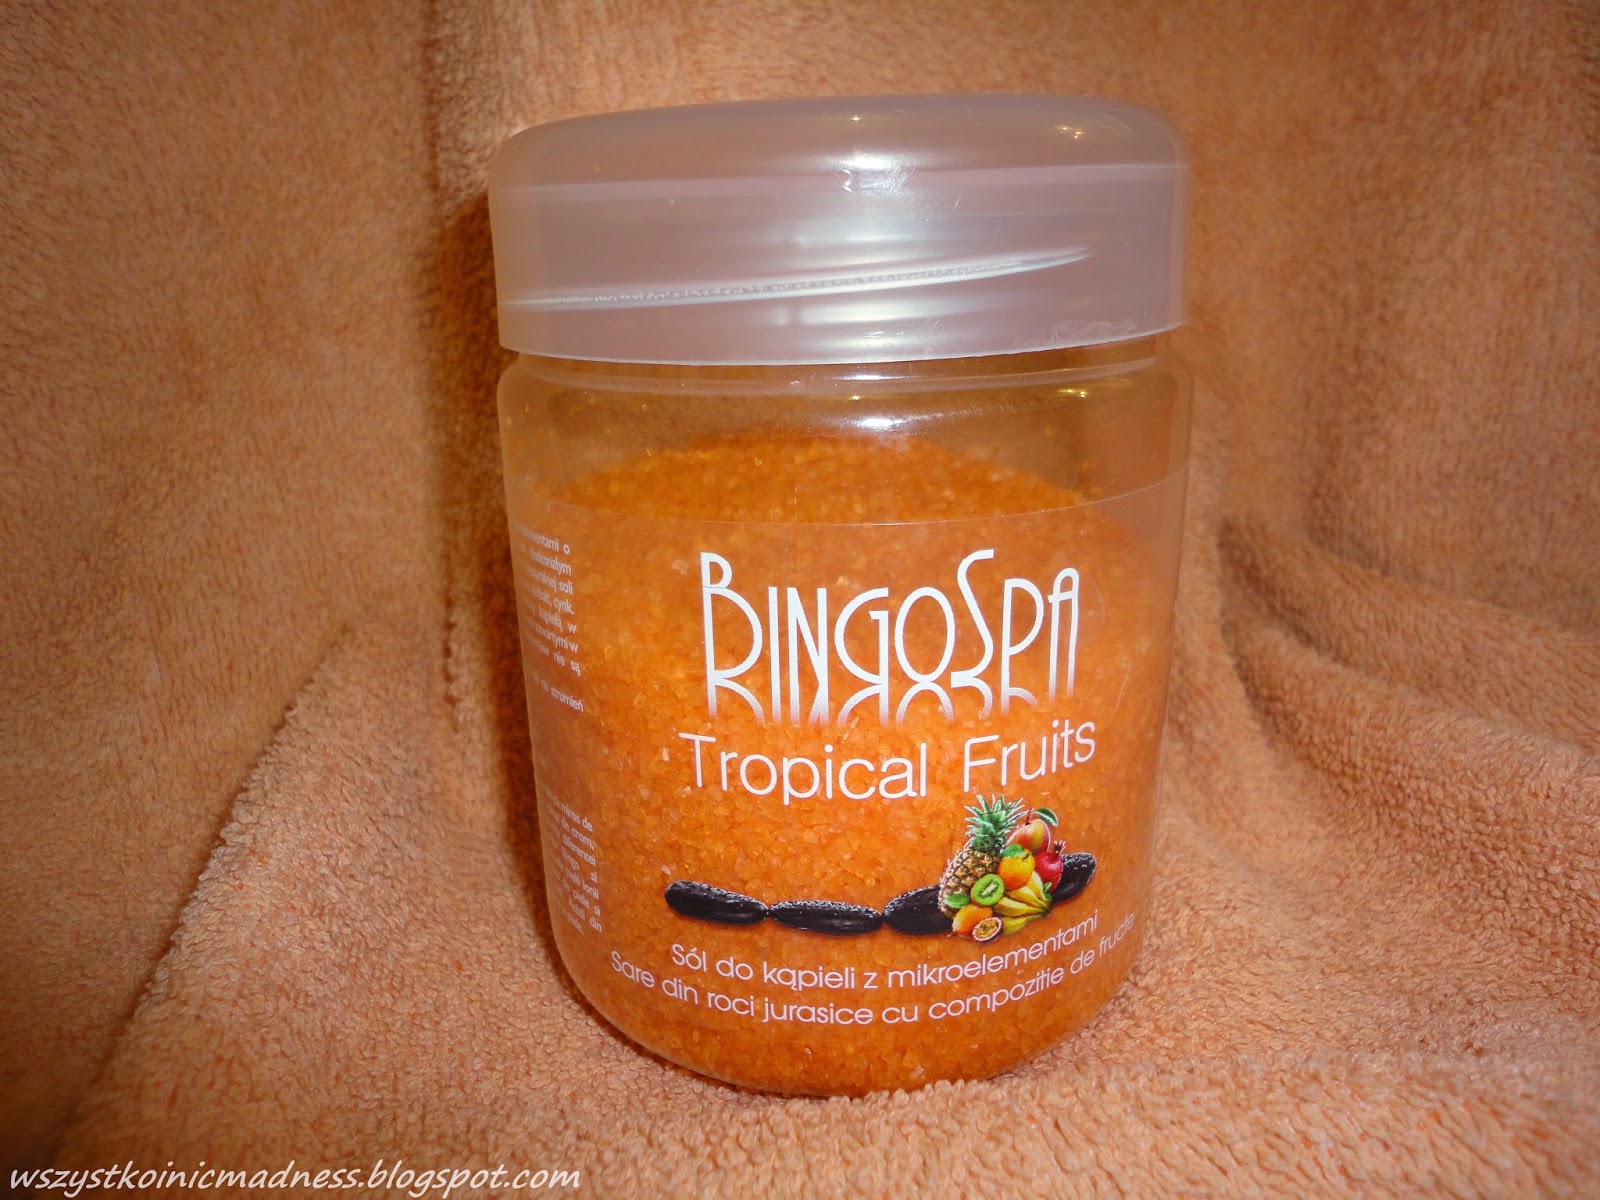 Z mojej strony lustra: Wspomnienie z dzieciństwa, czyli tropikalna sól do kąpieli od BingoSpa